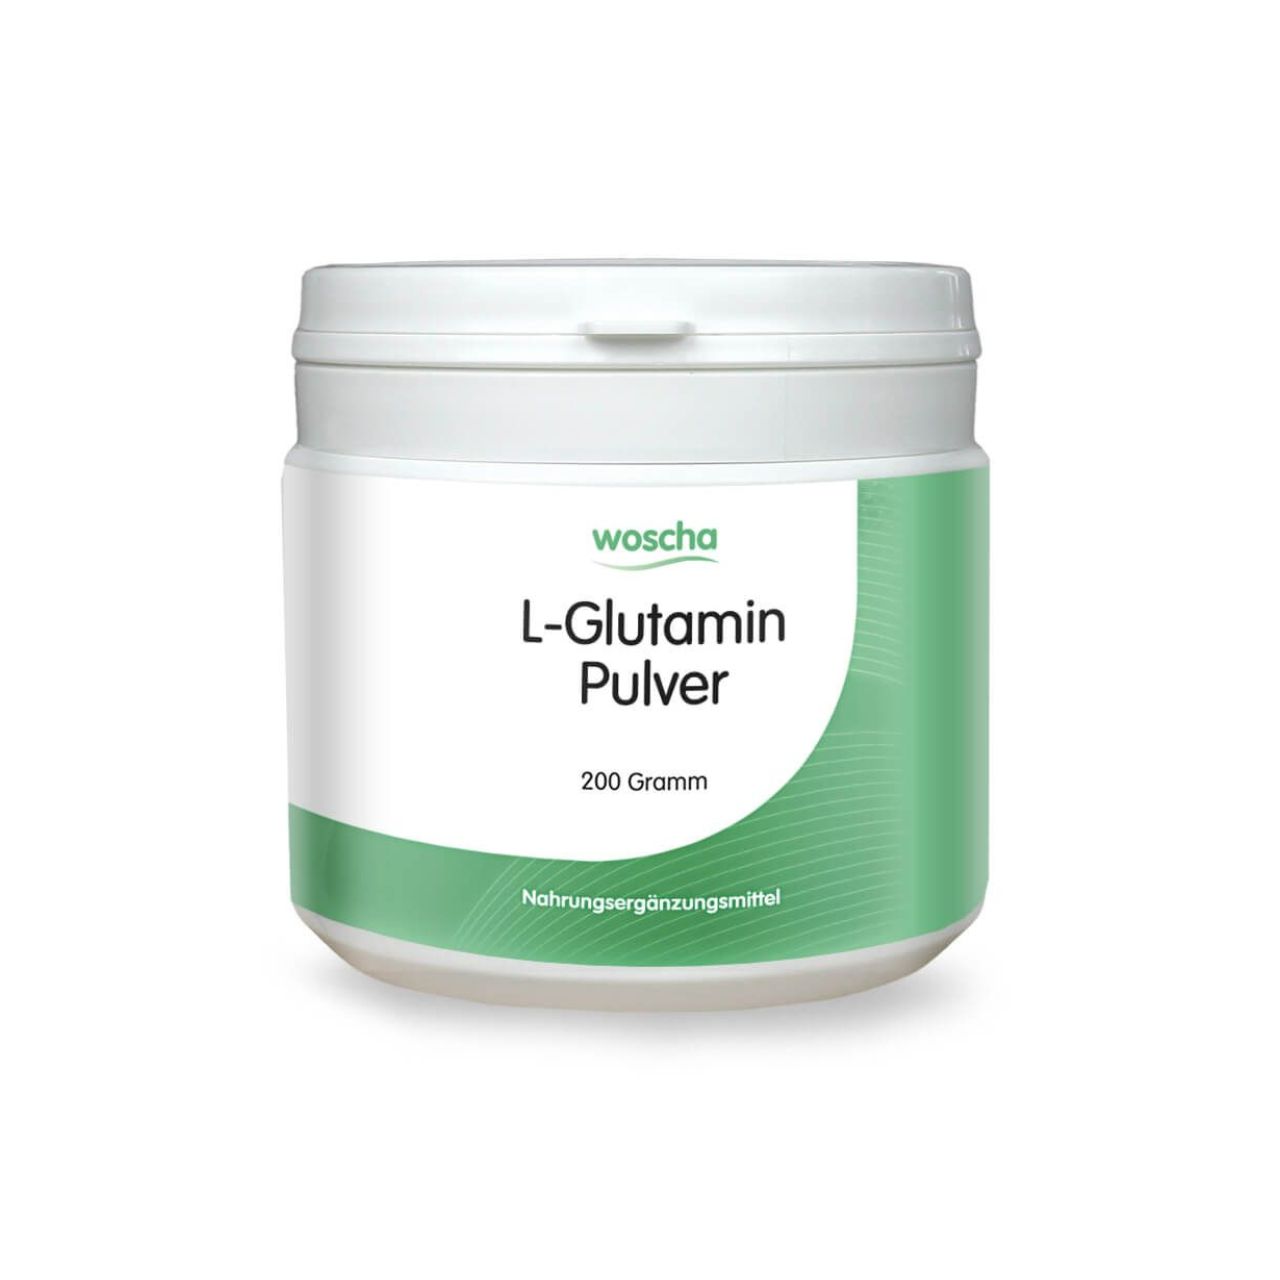 Woscha L-Glutamin von podo medi beinhaltet 200 Gramm Pulver